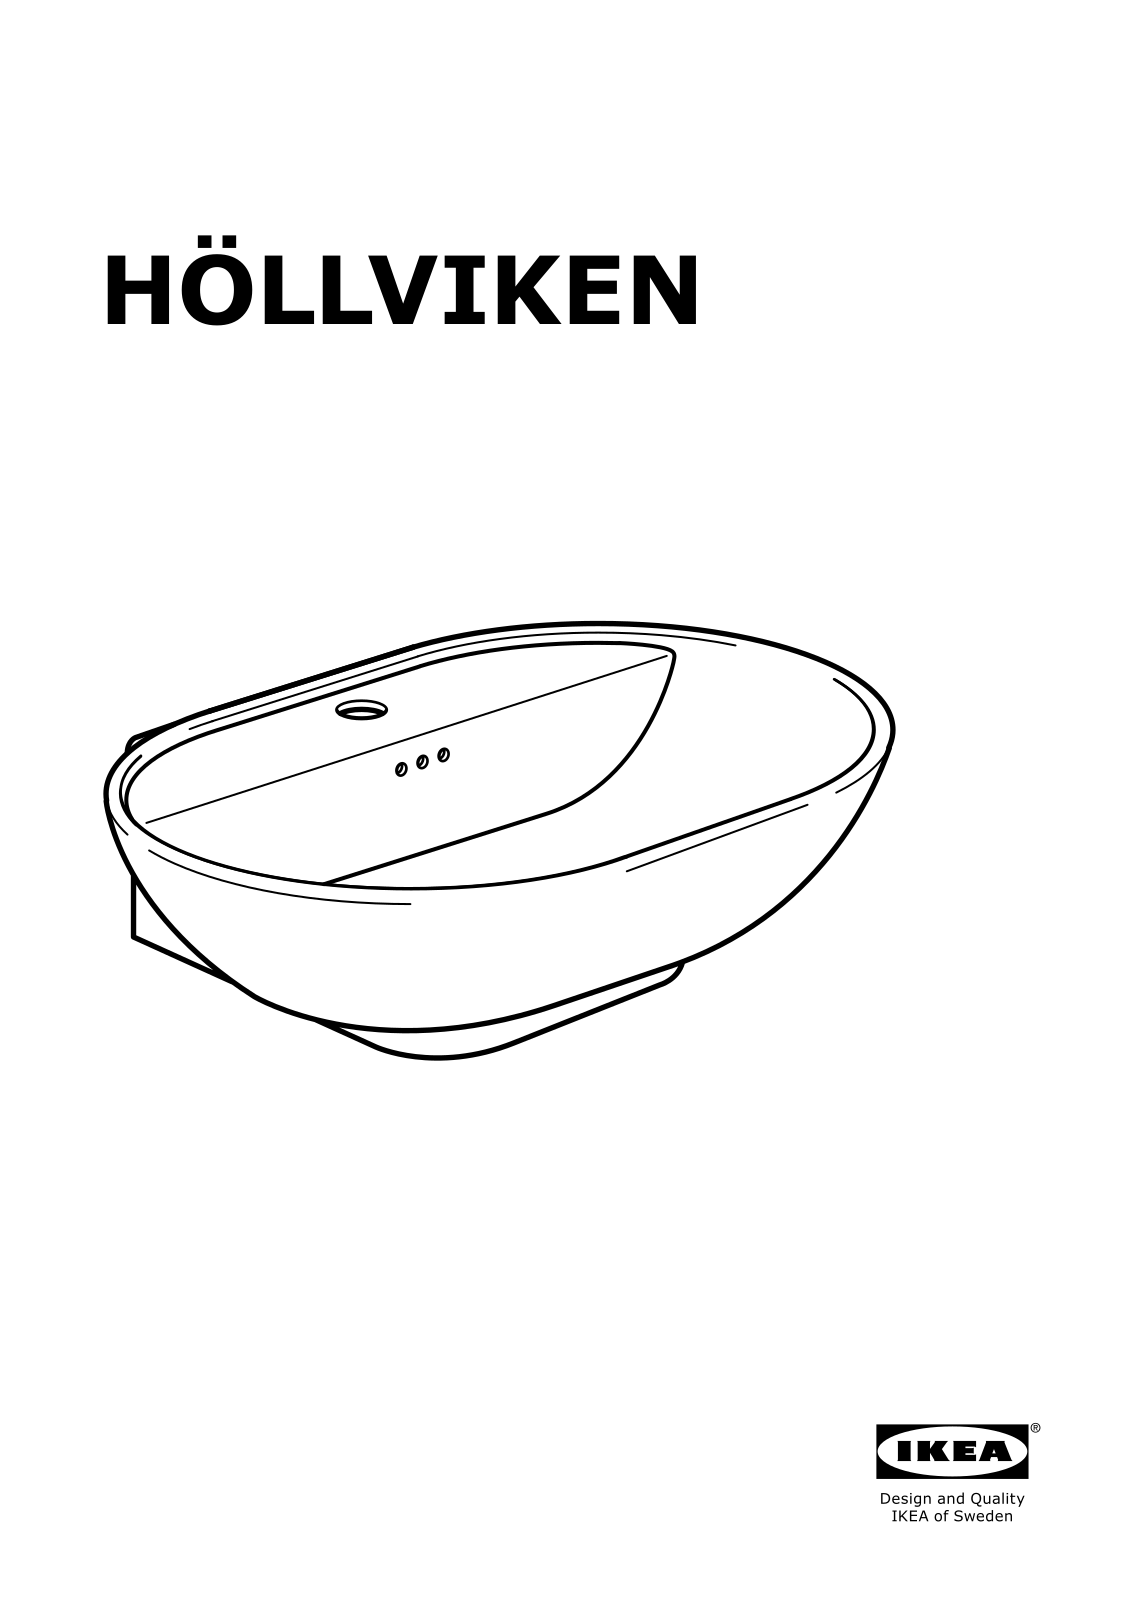 IKEA HOLLVIKEN User Manual